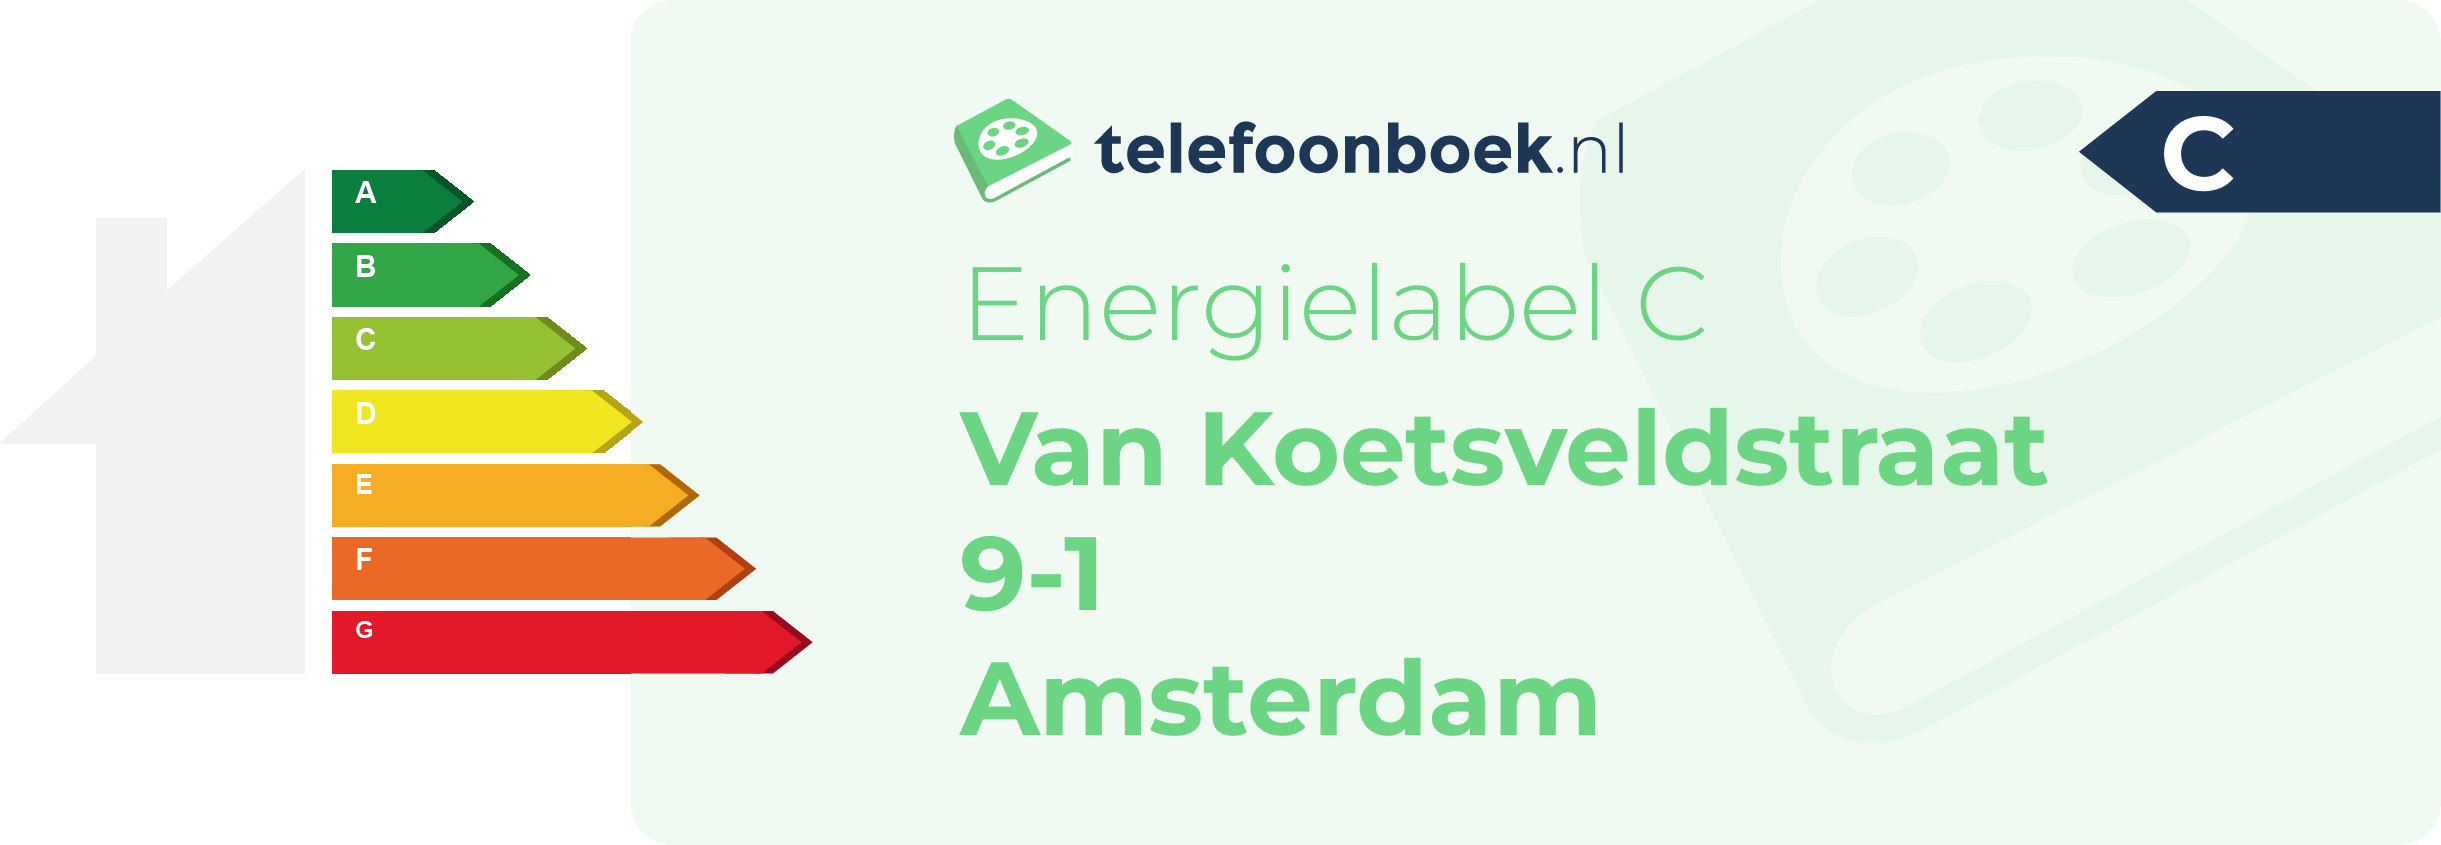 Energielabel Van Koetsveldstraat 9-1 Amsterdam